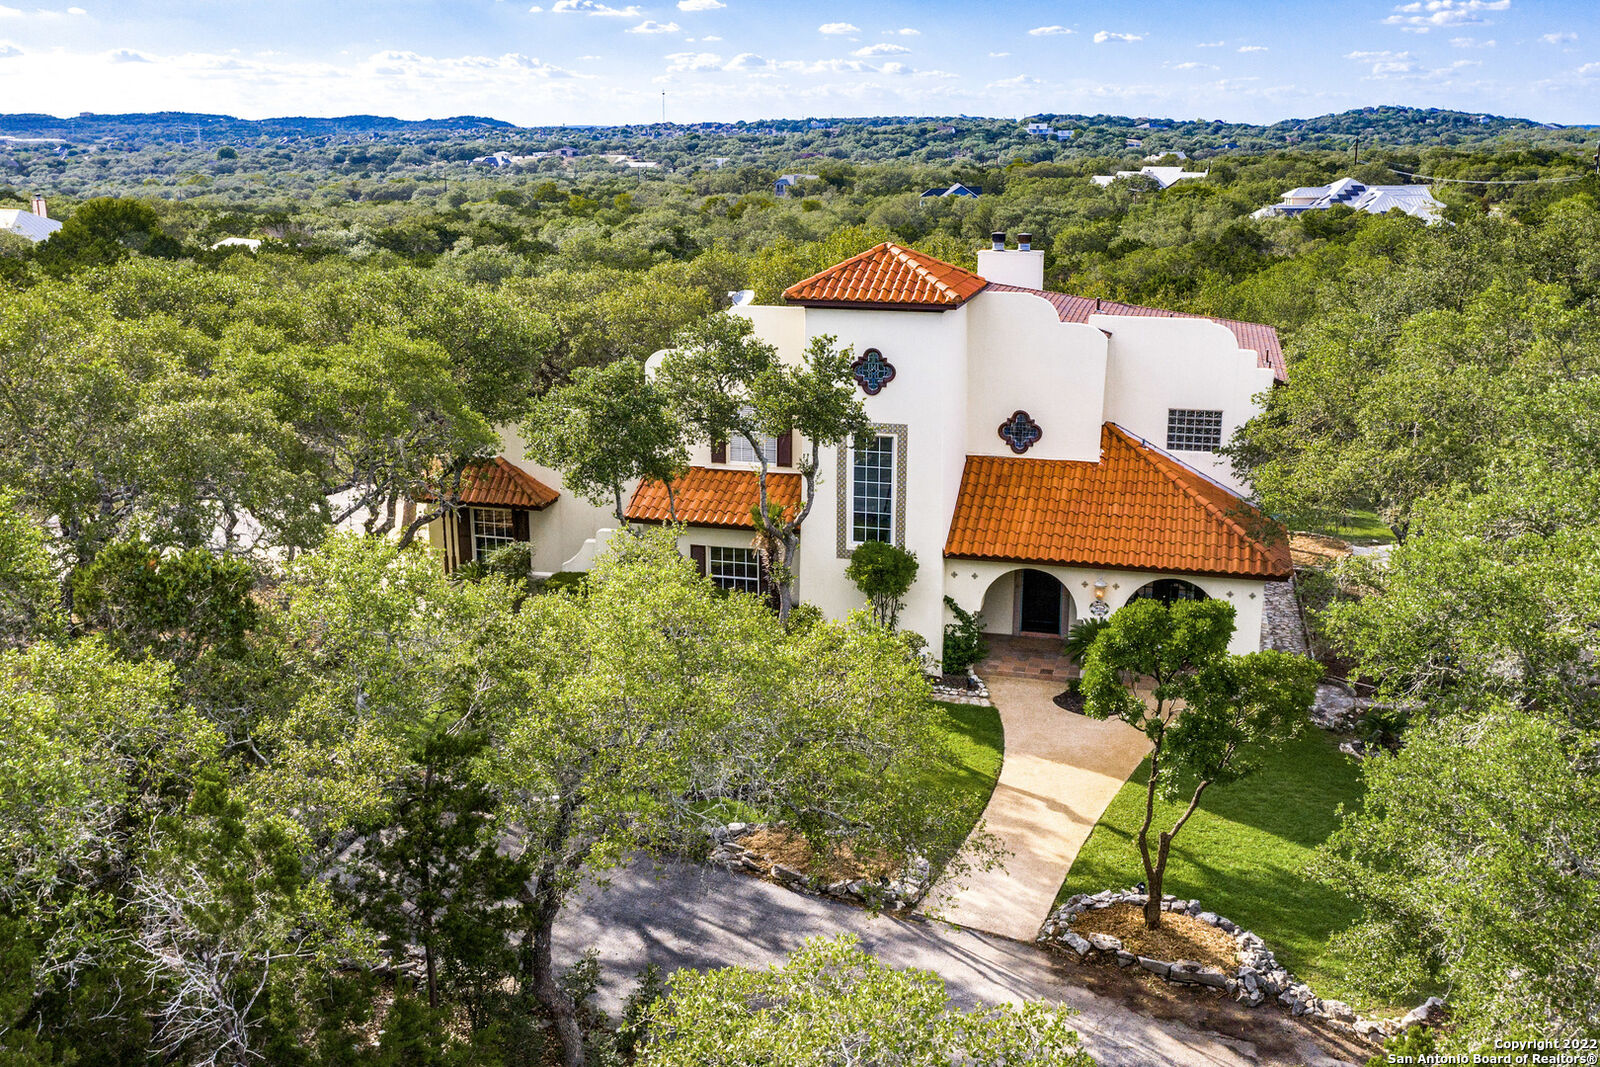 Una casa de renacimiento español de $ 1.4 millones está a la venta justo al norte de San Antonio